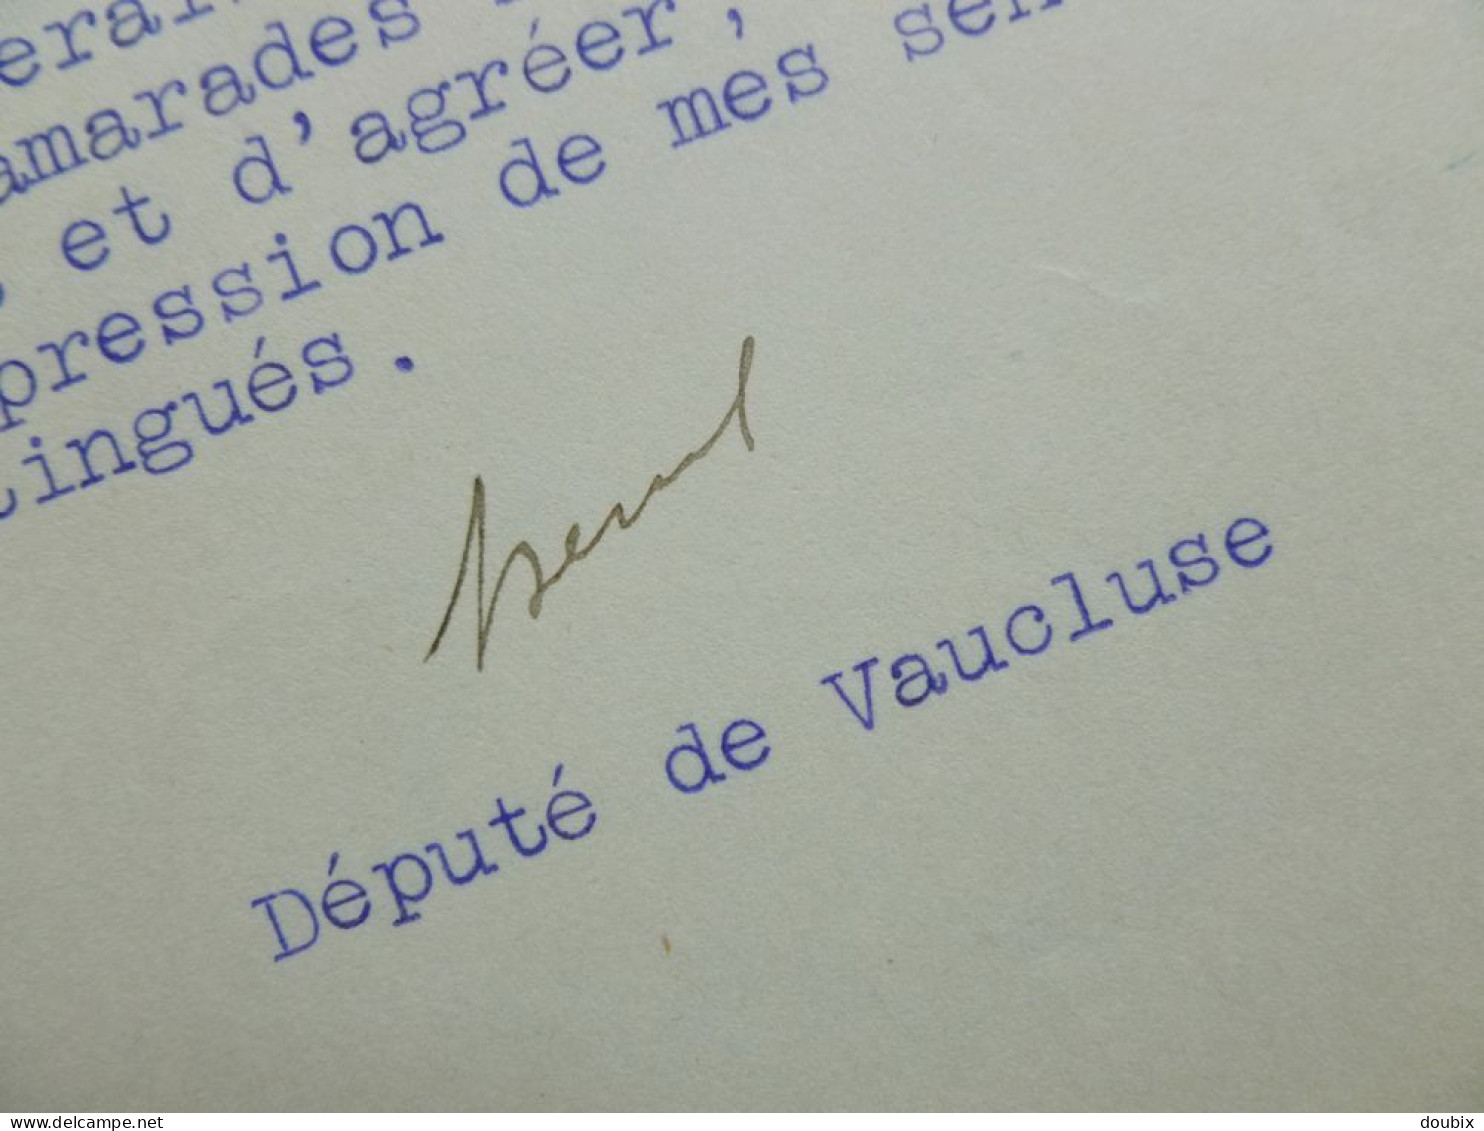 Louis SERRE (1873-1939) Député AVIGNON Vaucluse Lagnes. Ministre Commerce. AUTOGRAPHE